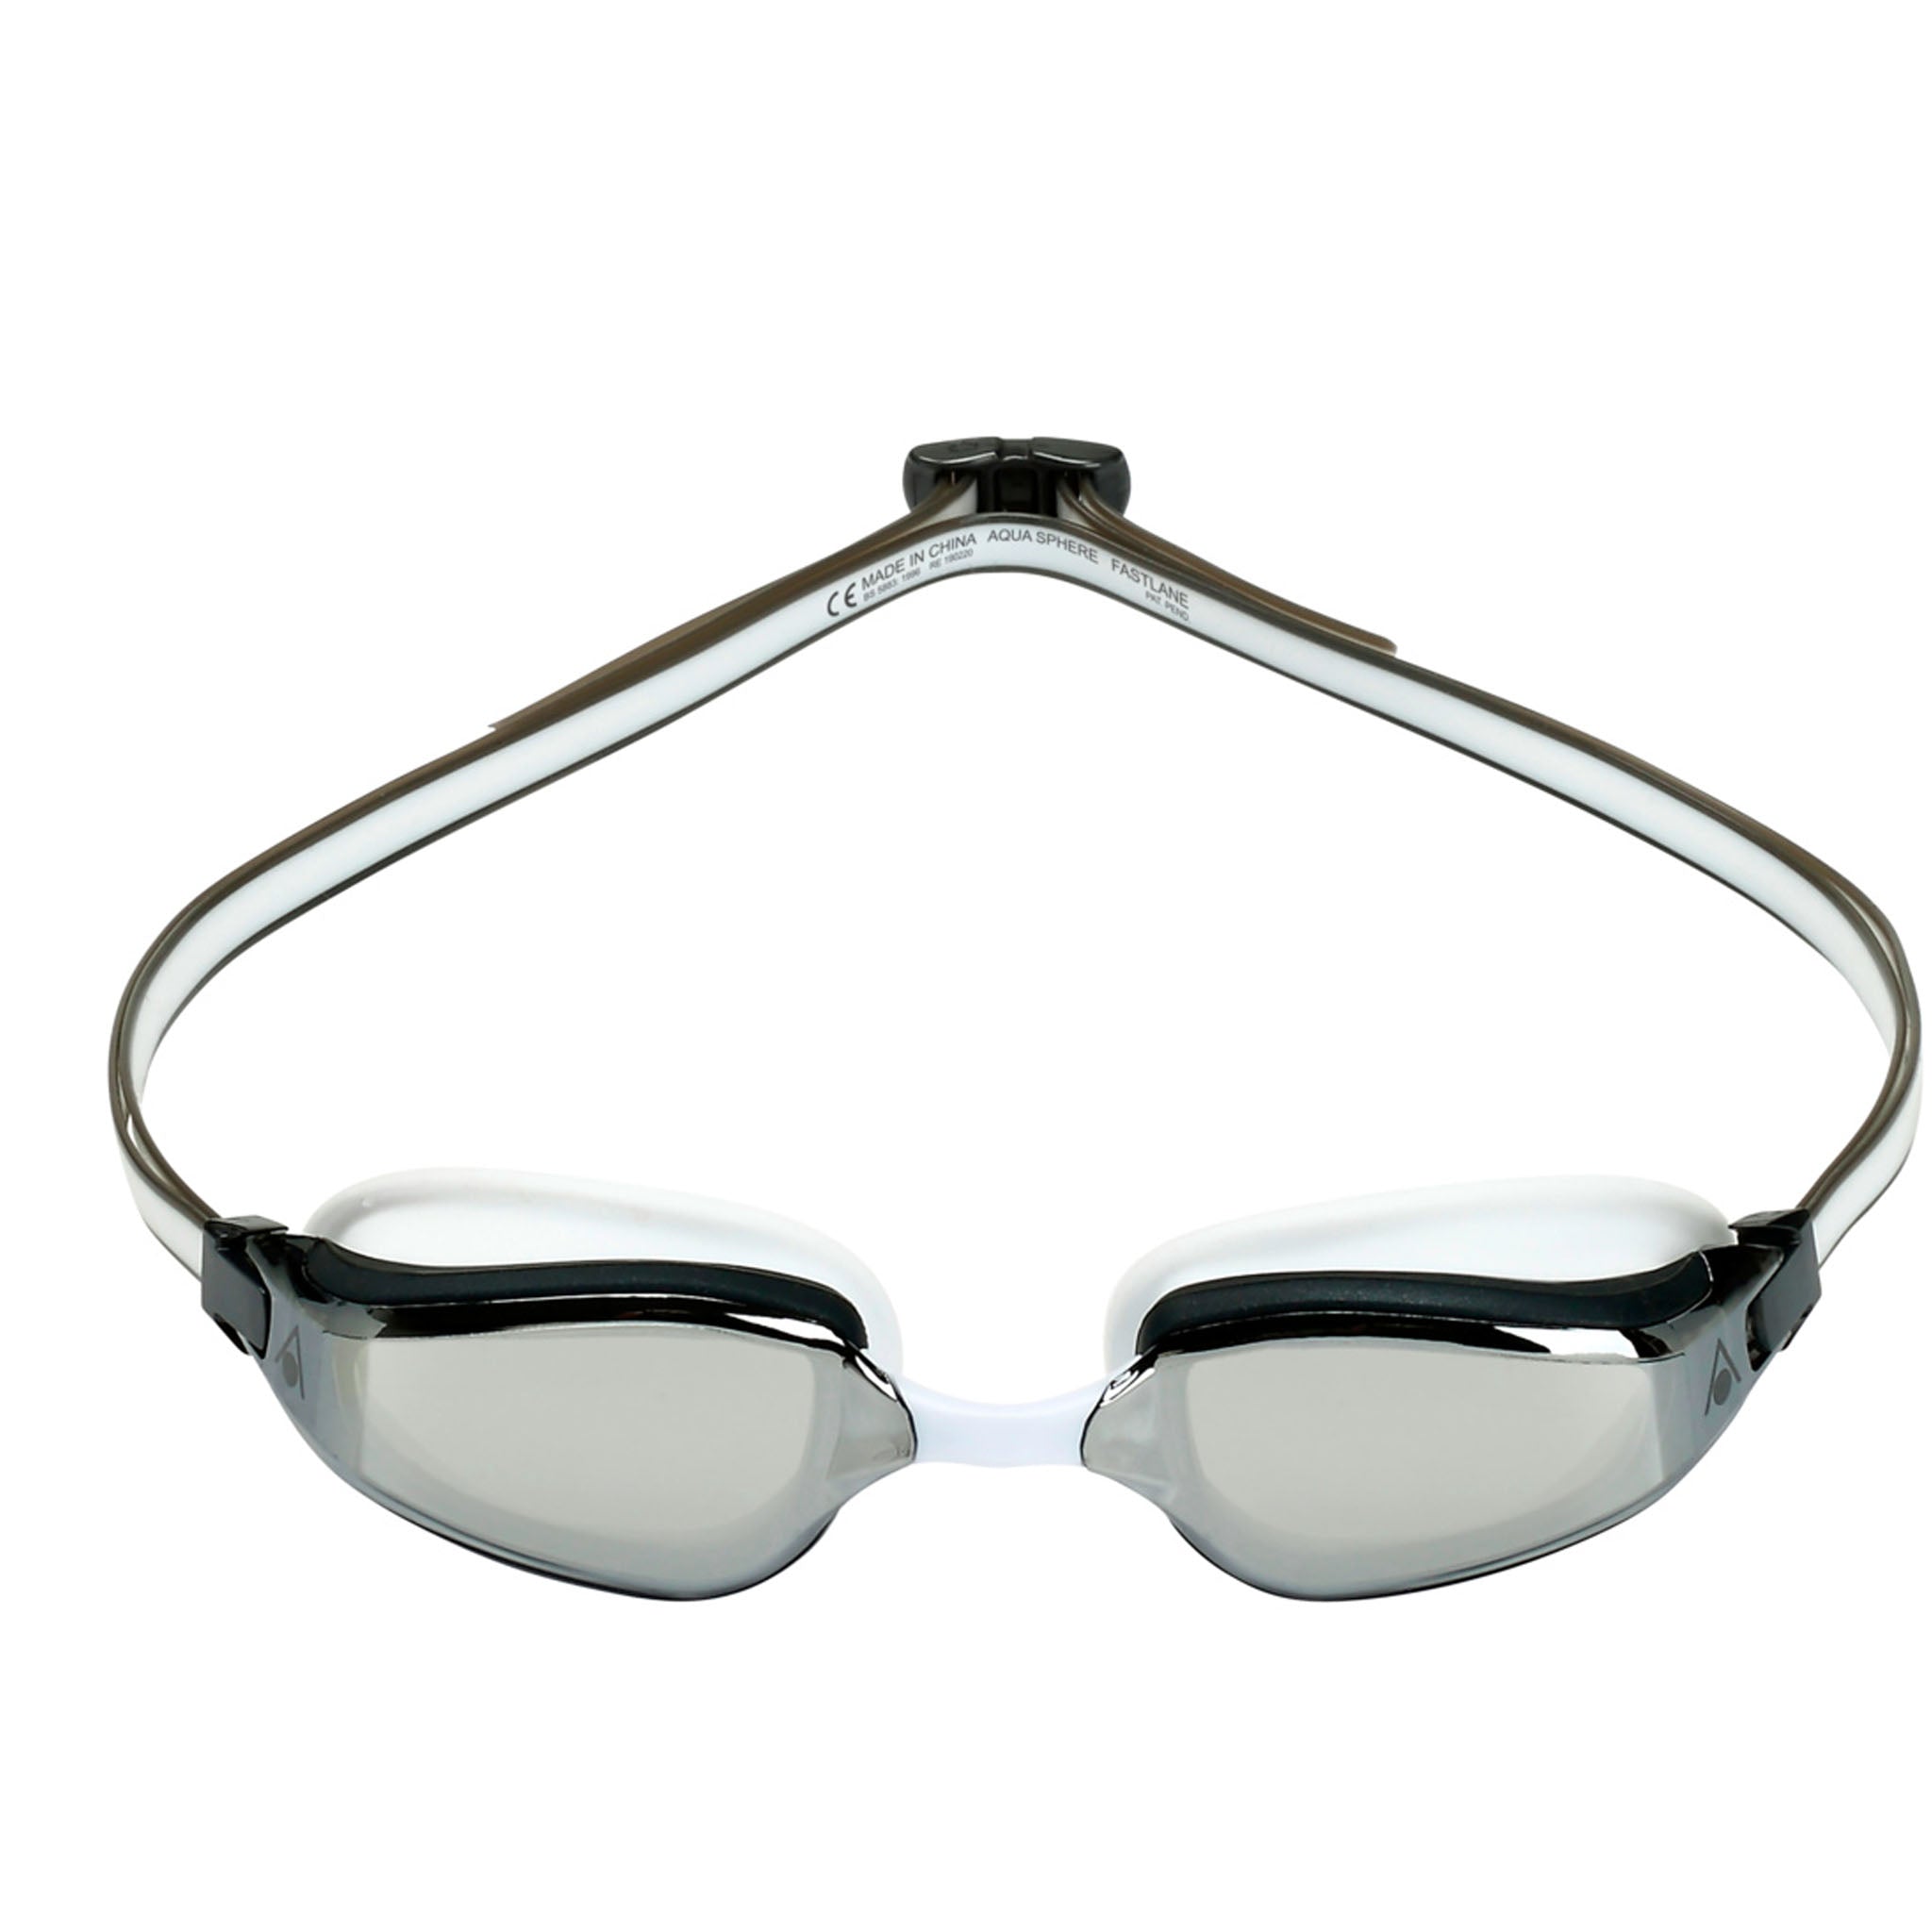 Aqua Sphere Fastlane Swimming Goggles Silver Mirrored Lenses - White/Grey